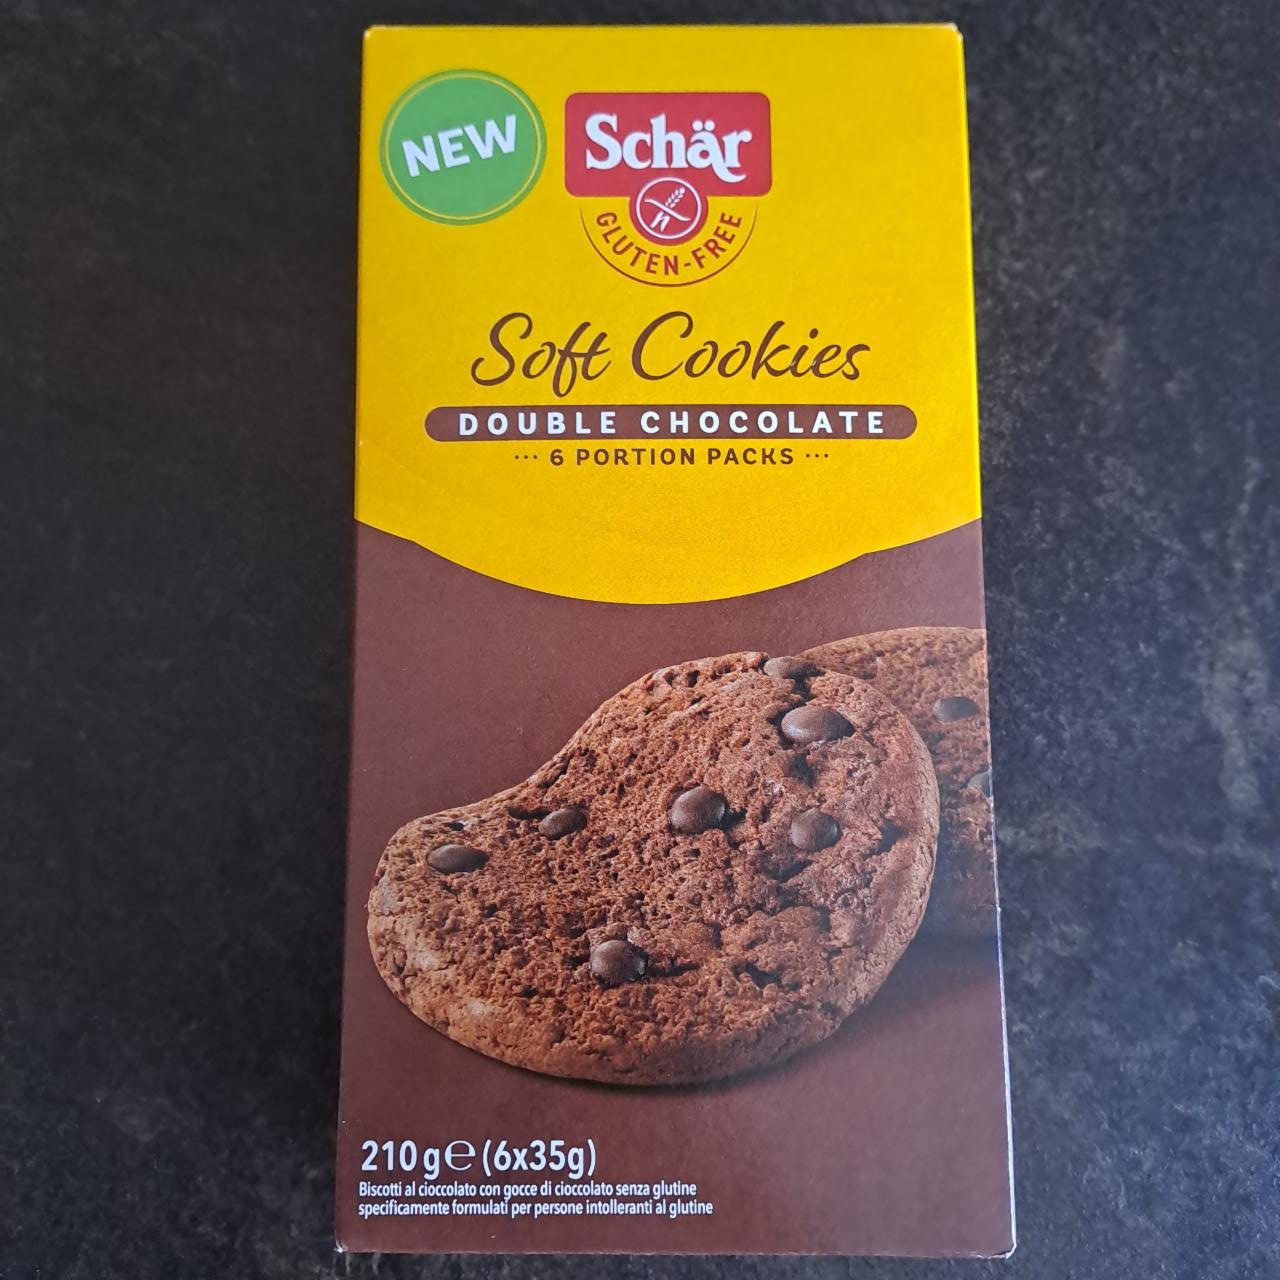 Fotografie - Soft Cookies Double Chocolate Schär